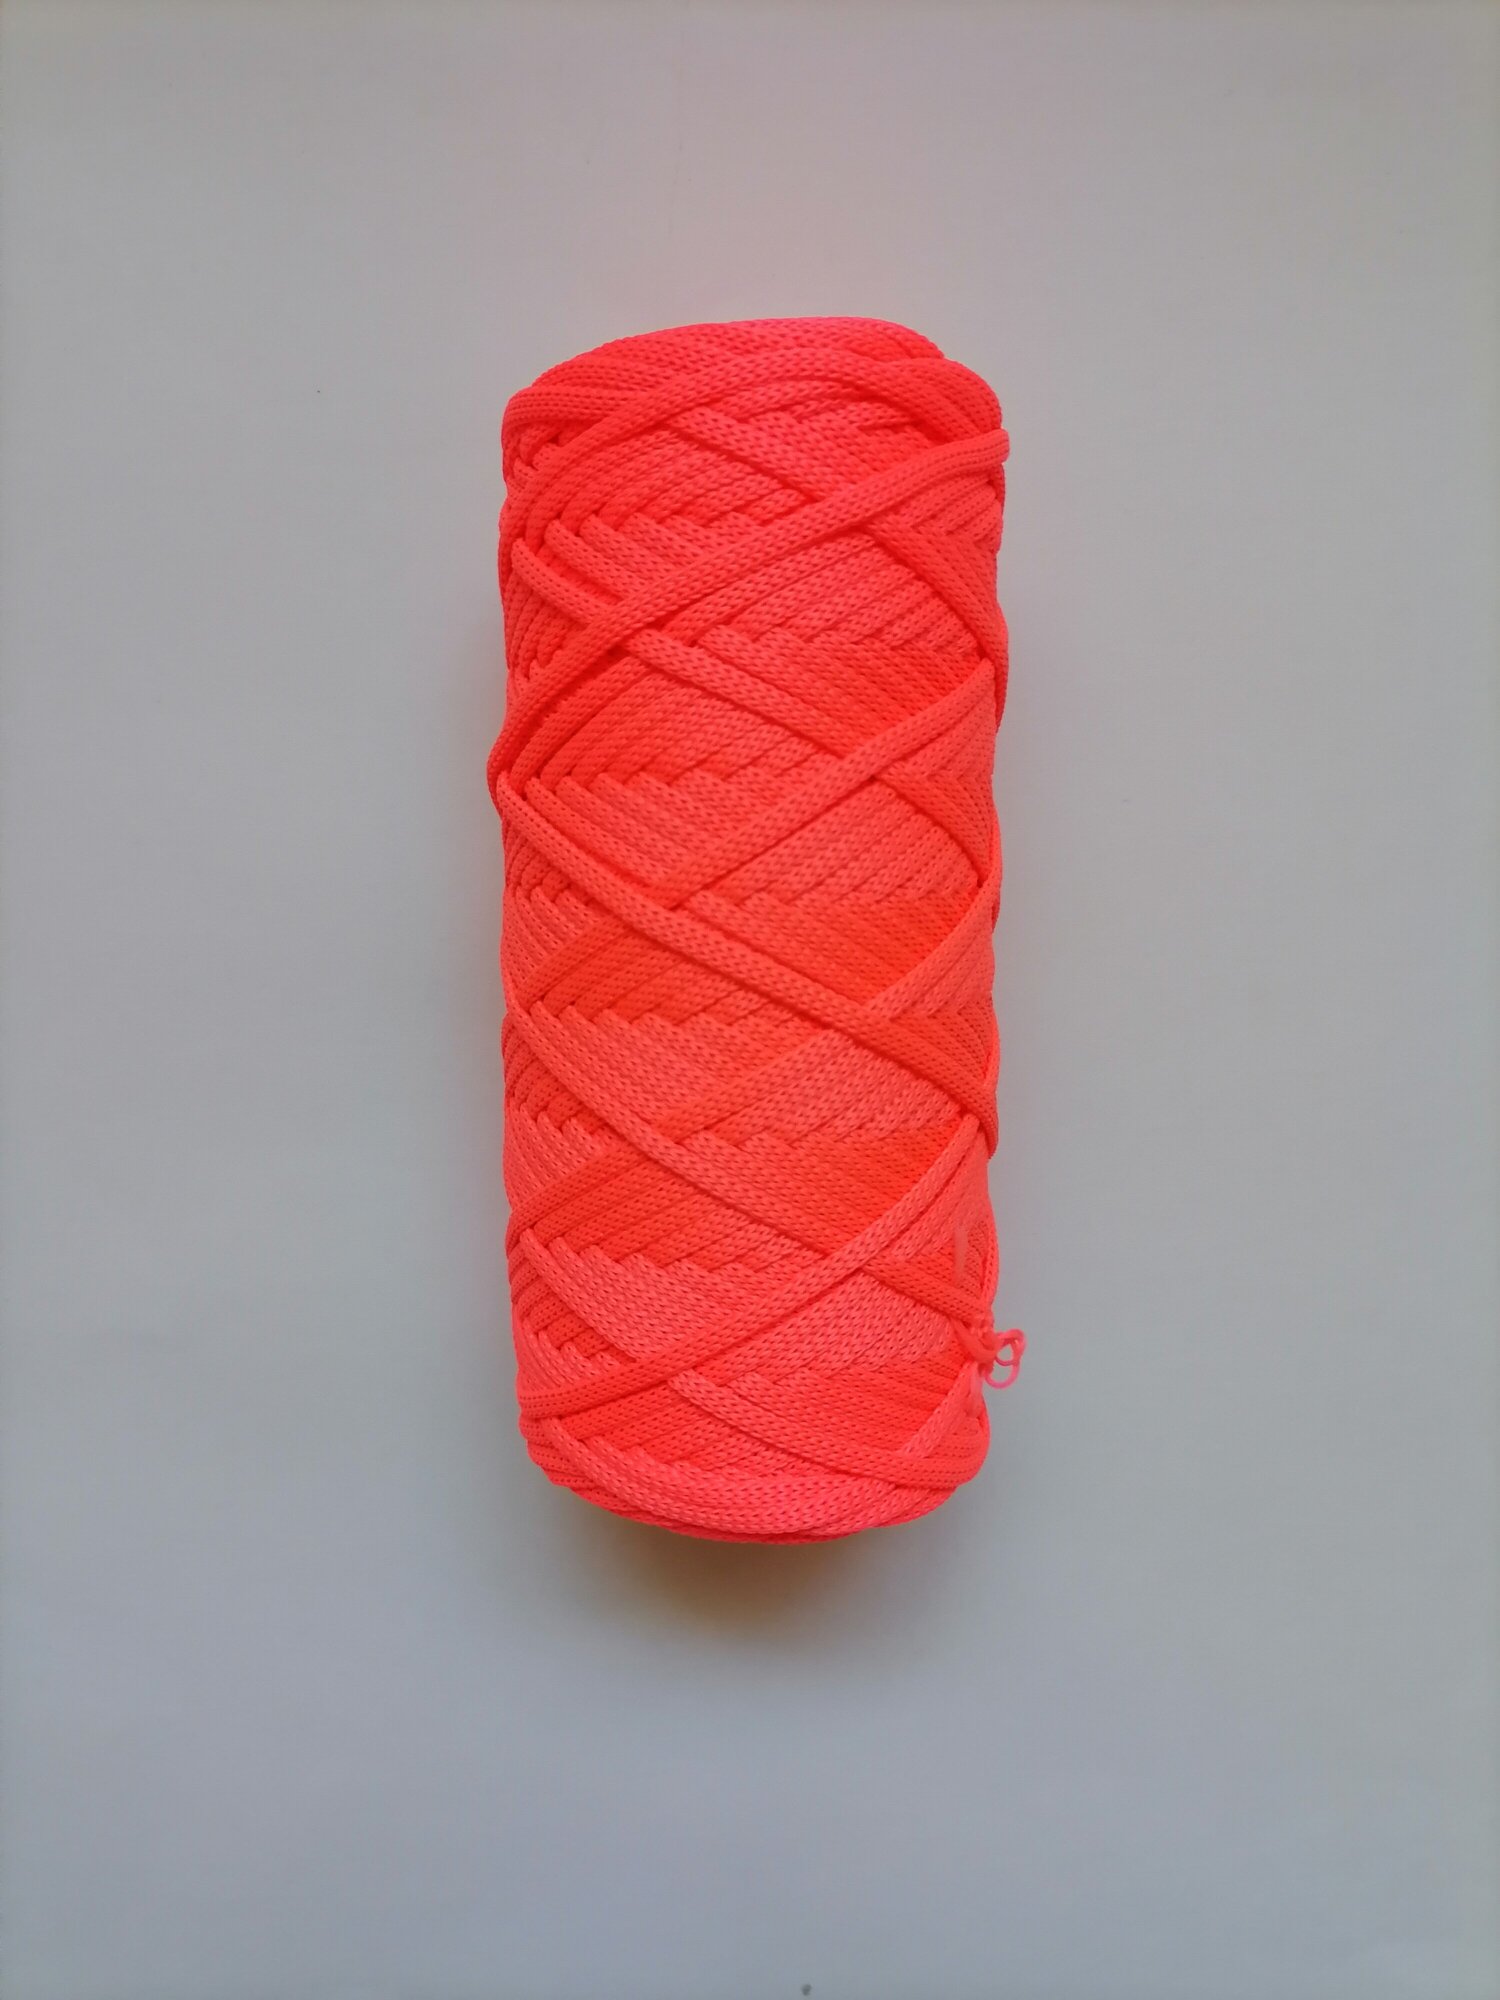 Шнур полиэфирный эльнить - 5 мм, 100 м, 100% полиэфир, без сердечника /шнур для вязания, рукоделия, макраме/"розовый неон"